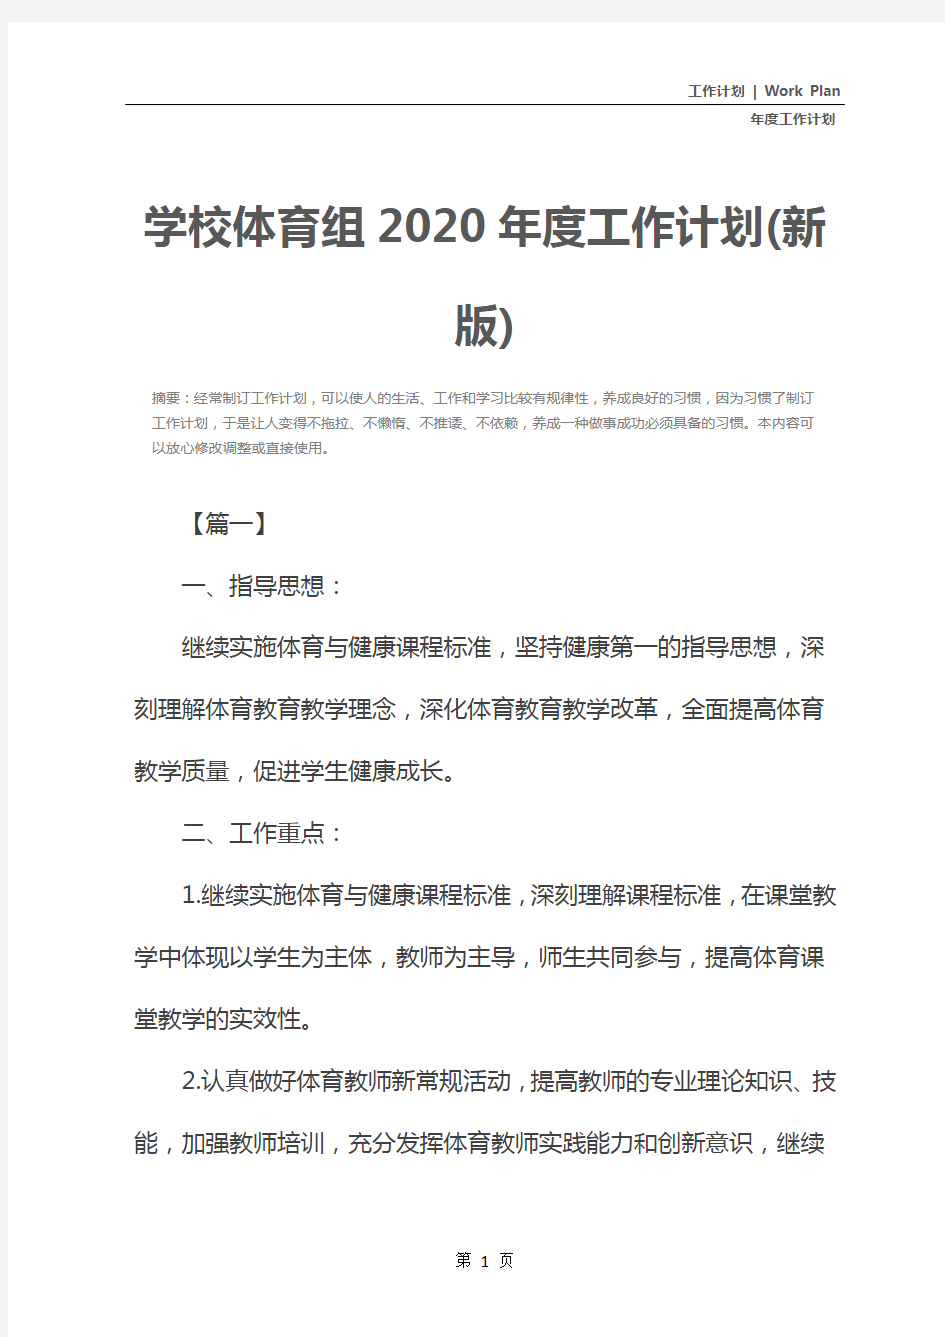 学校体育组2020年度工作计划(新版)